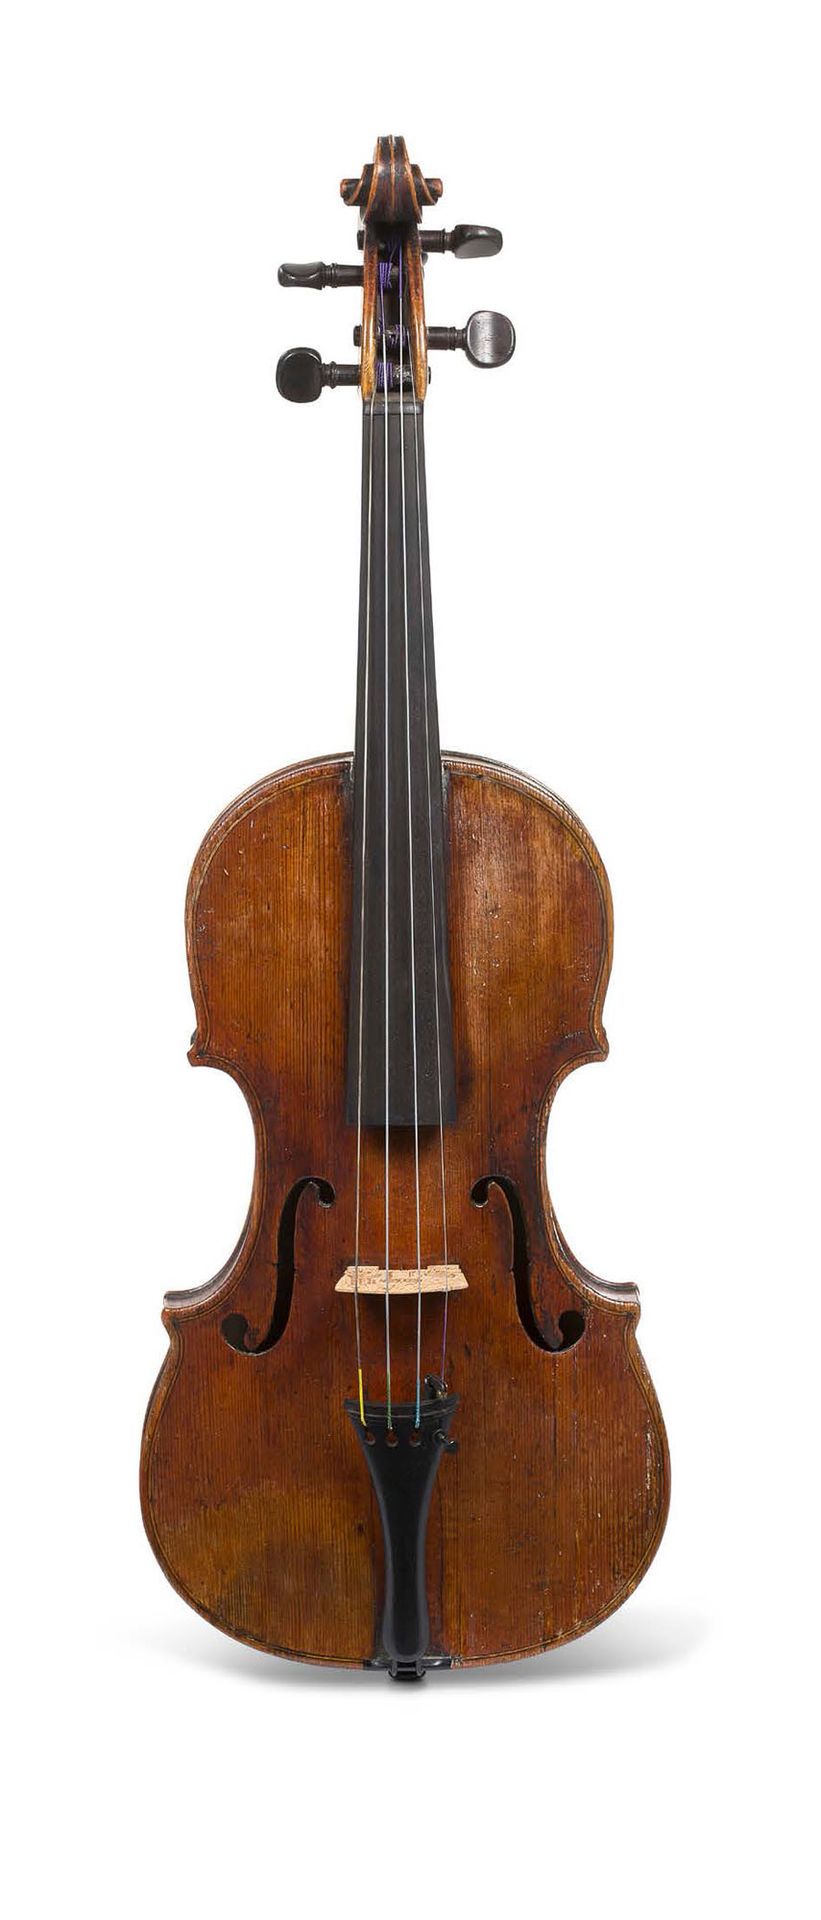 Null Schöne Geige, die von Jean Ouvrard in Mirecourt um 1730 hergestellt wurde.
&hellip;